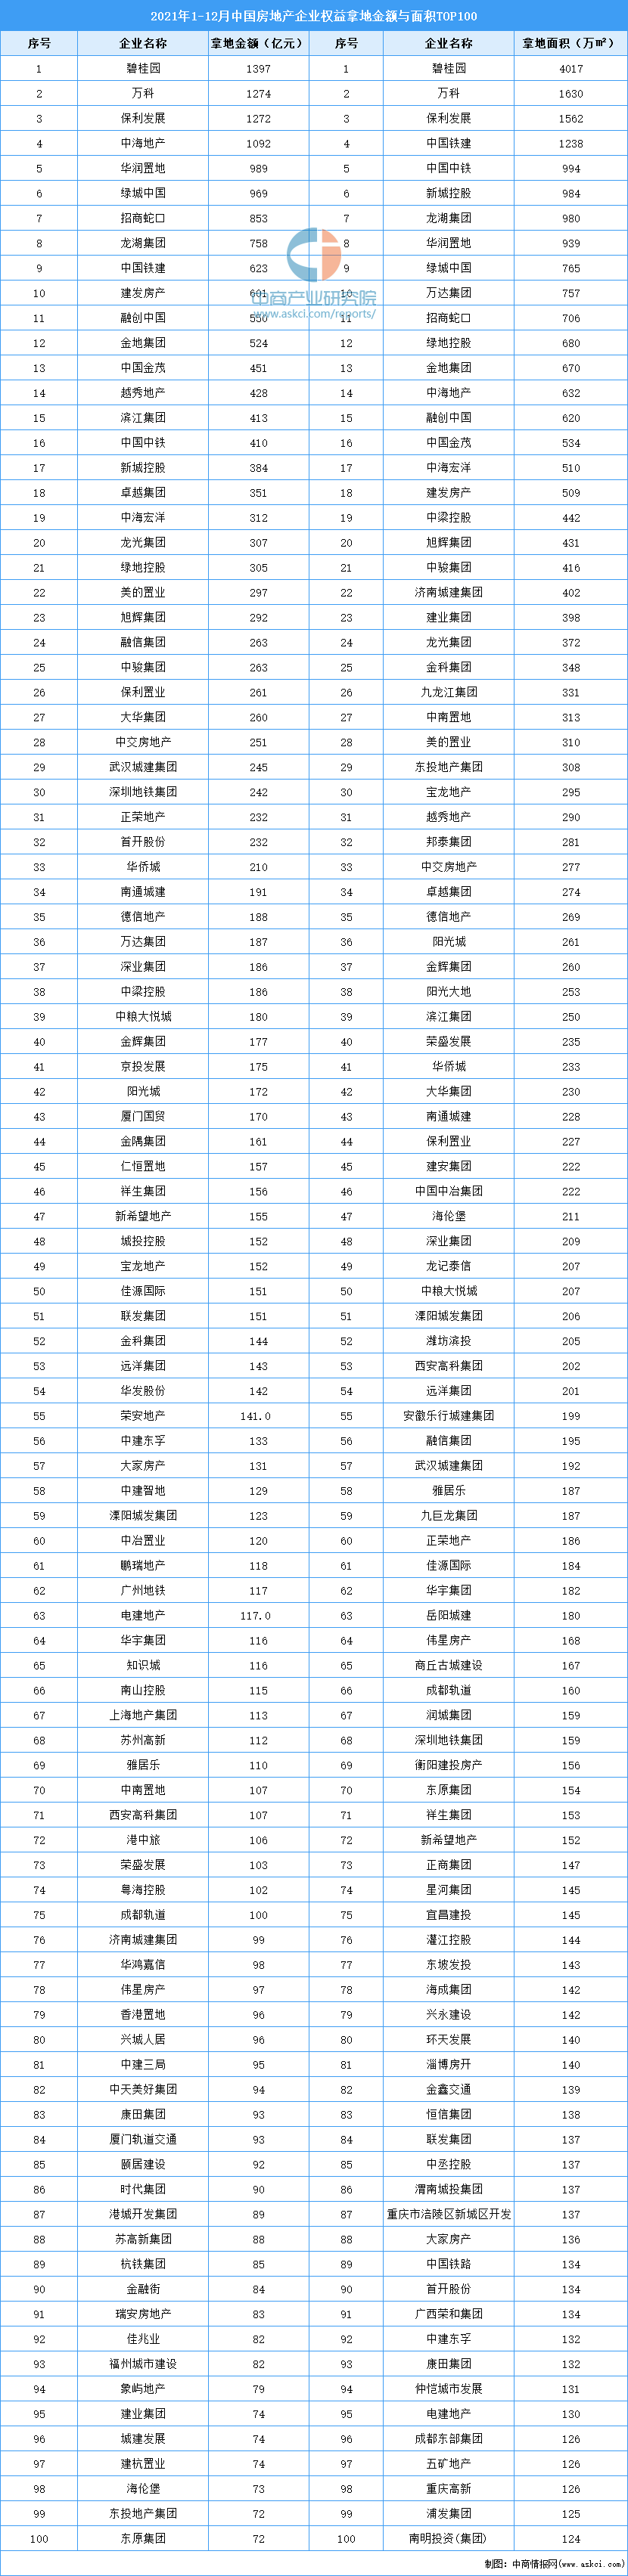 2021年1-12月中国房地产企业权益拿地金额与面积TOP100